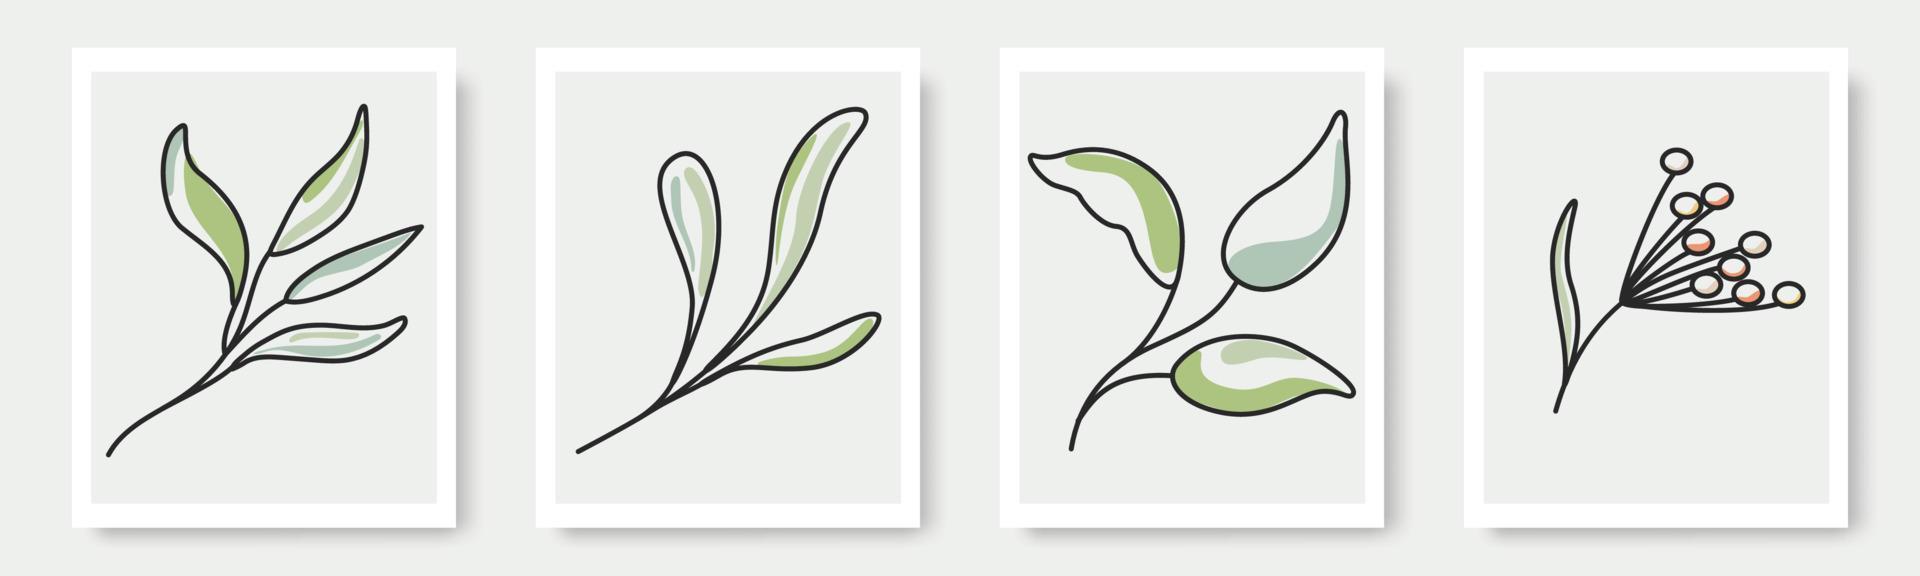 conjunto de formas desenhadas à mão e elementos de design floral. folhas exóticas da selva. ícone de elemento de ilustrações na moda modernas contemporâneas abstratas vetor